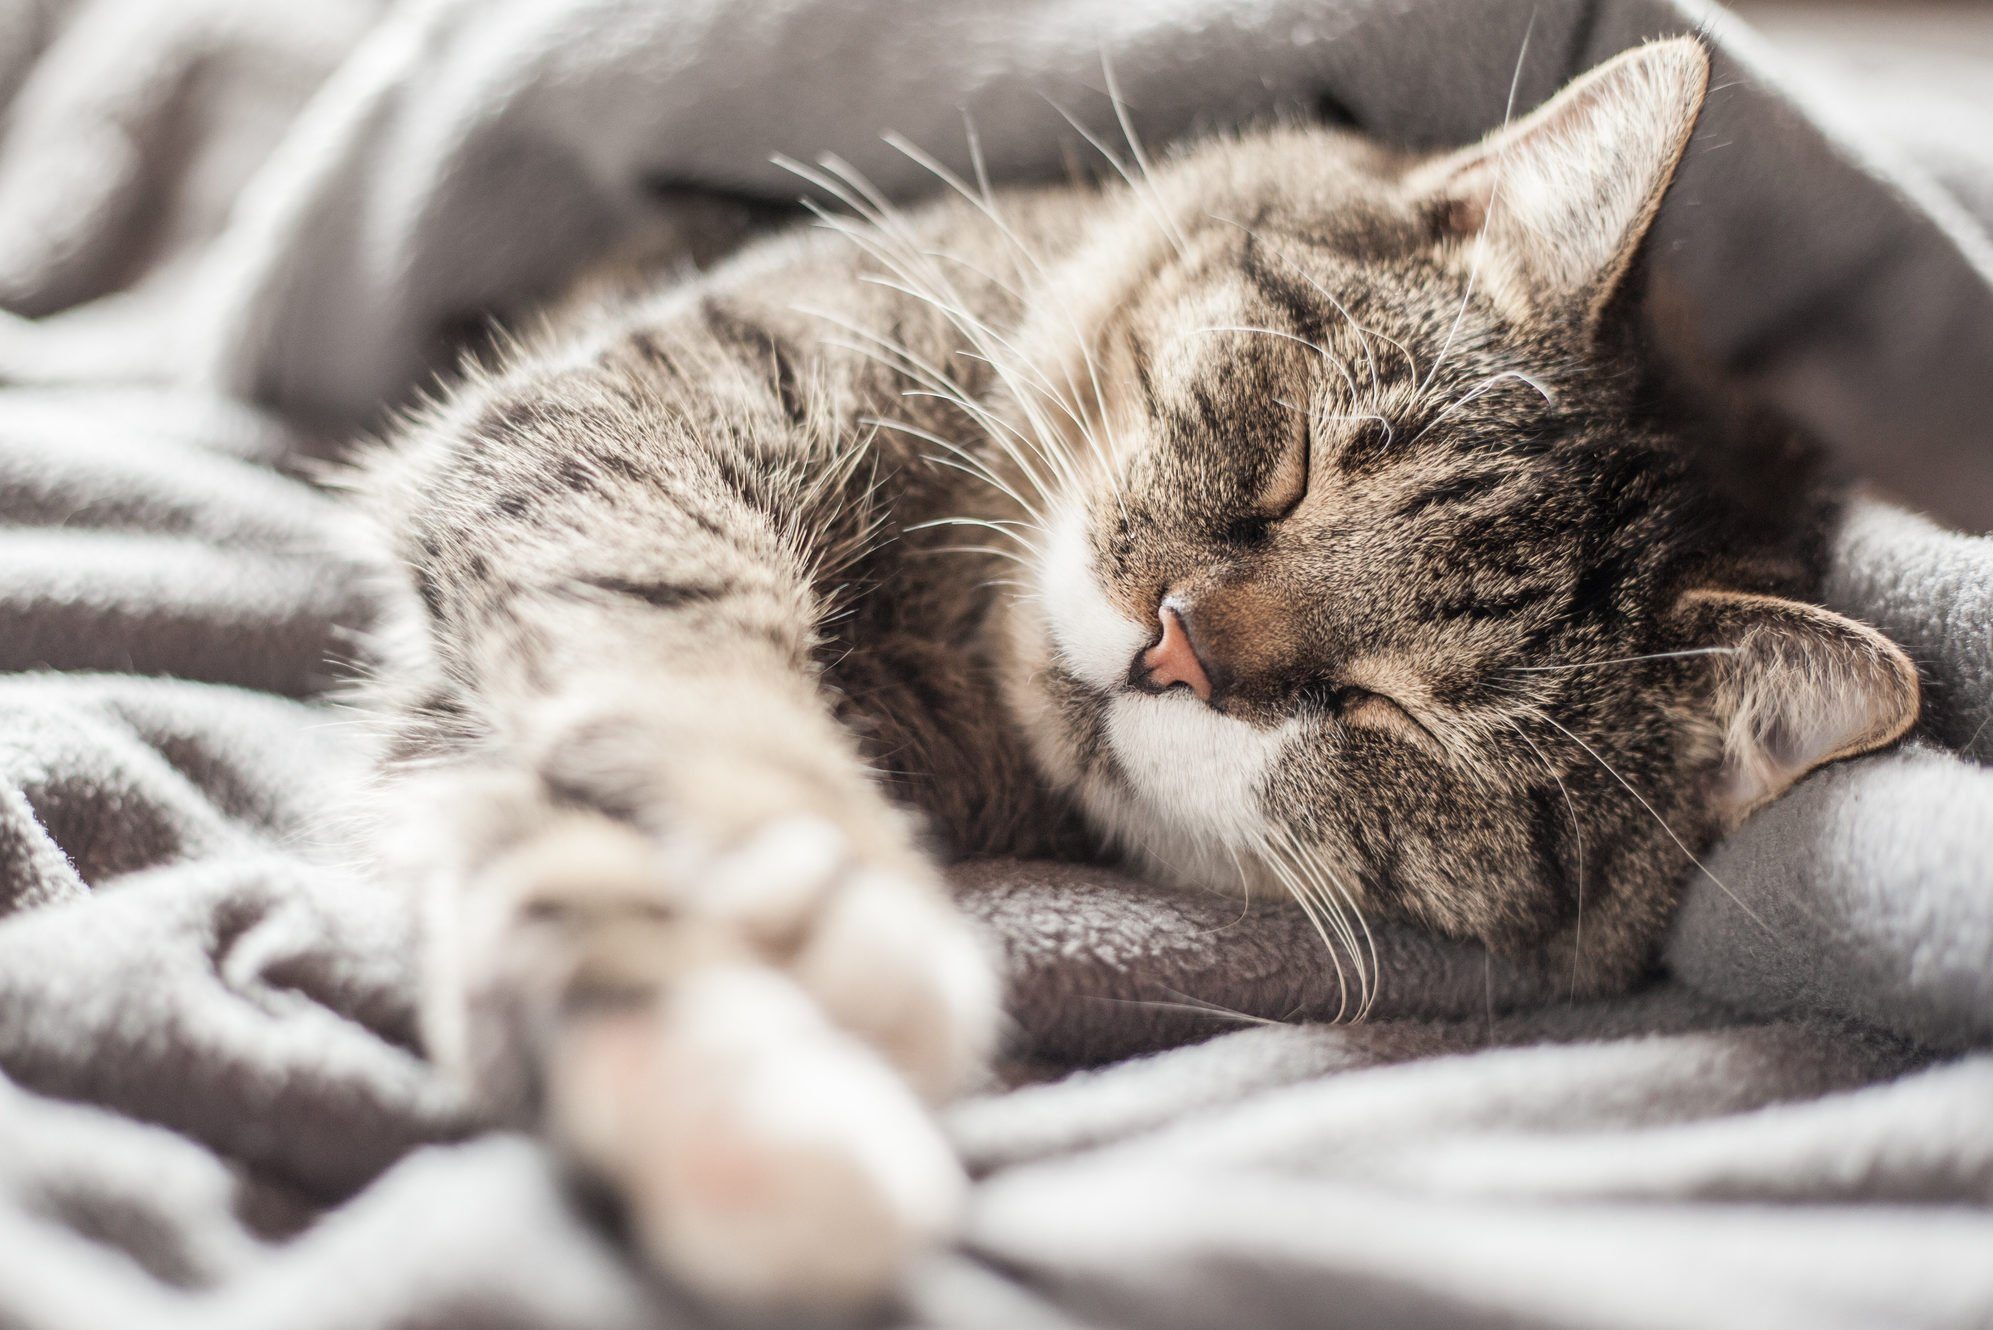 A cat sleeping in a blanket.